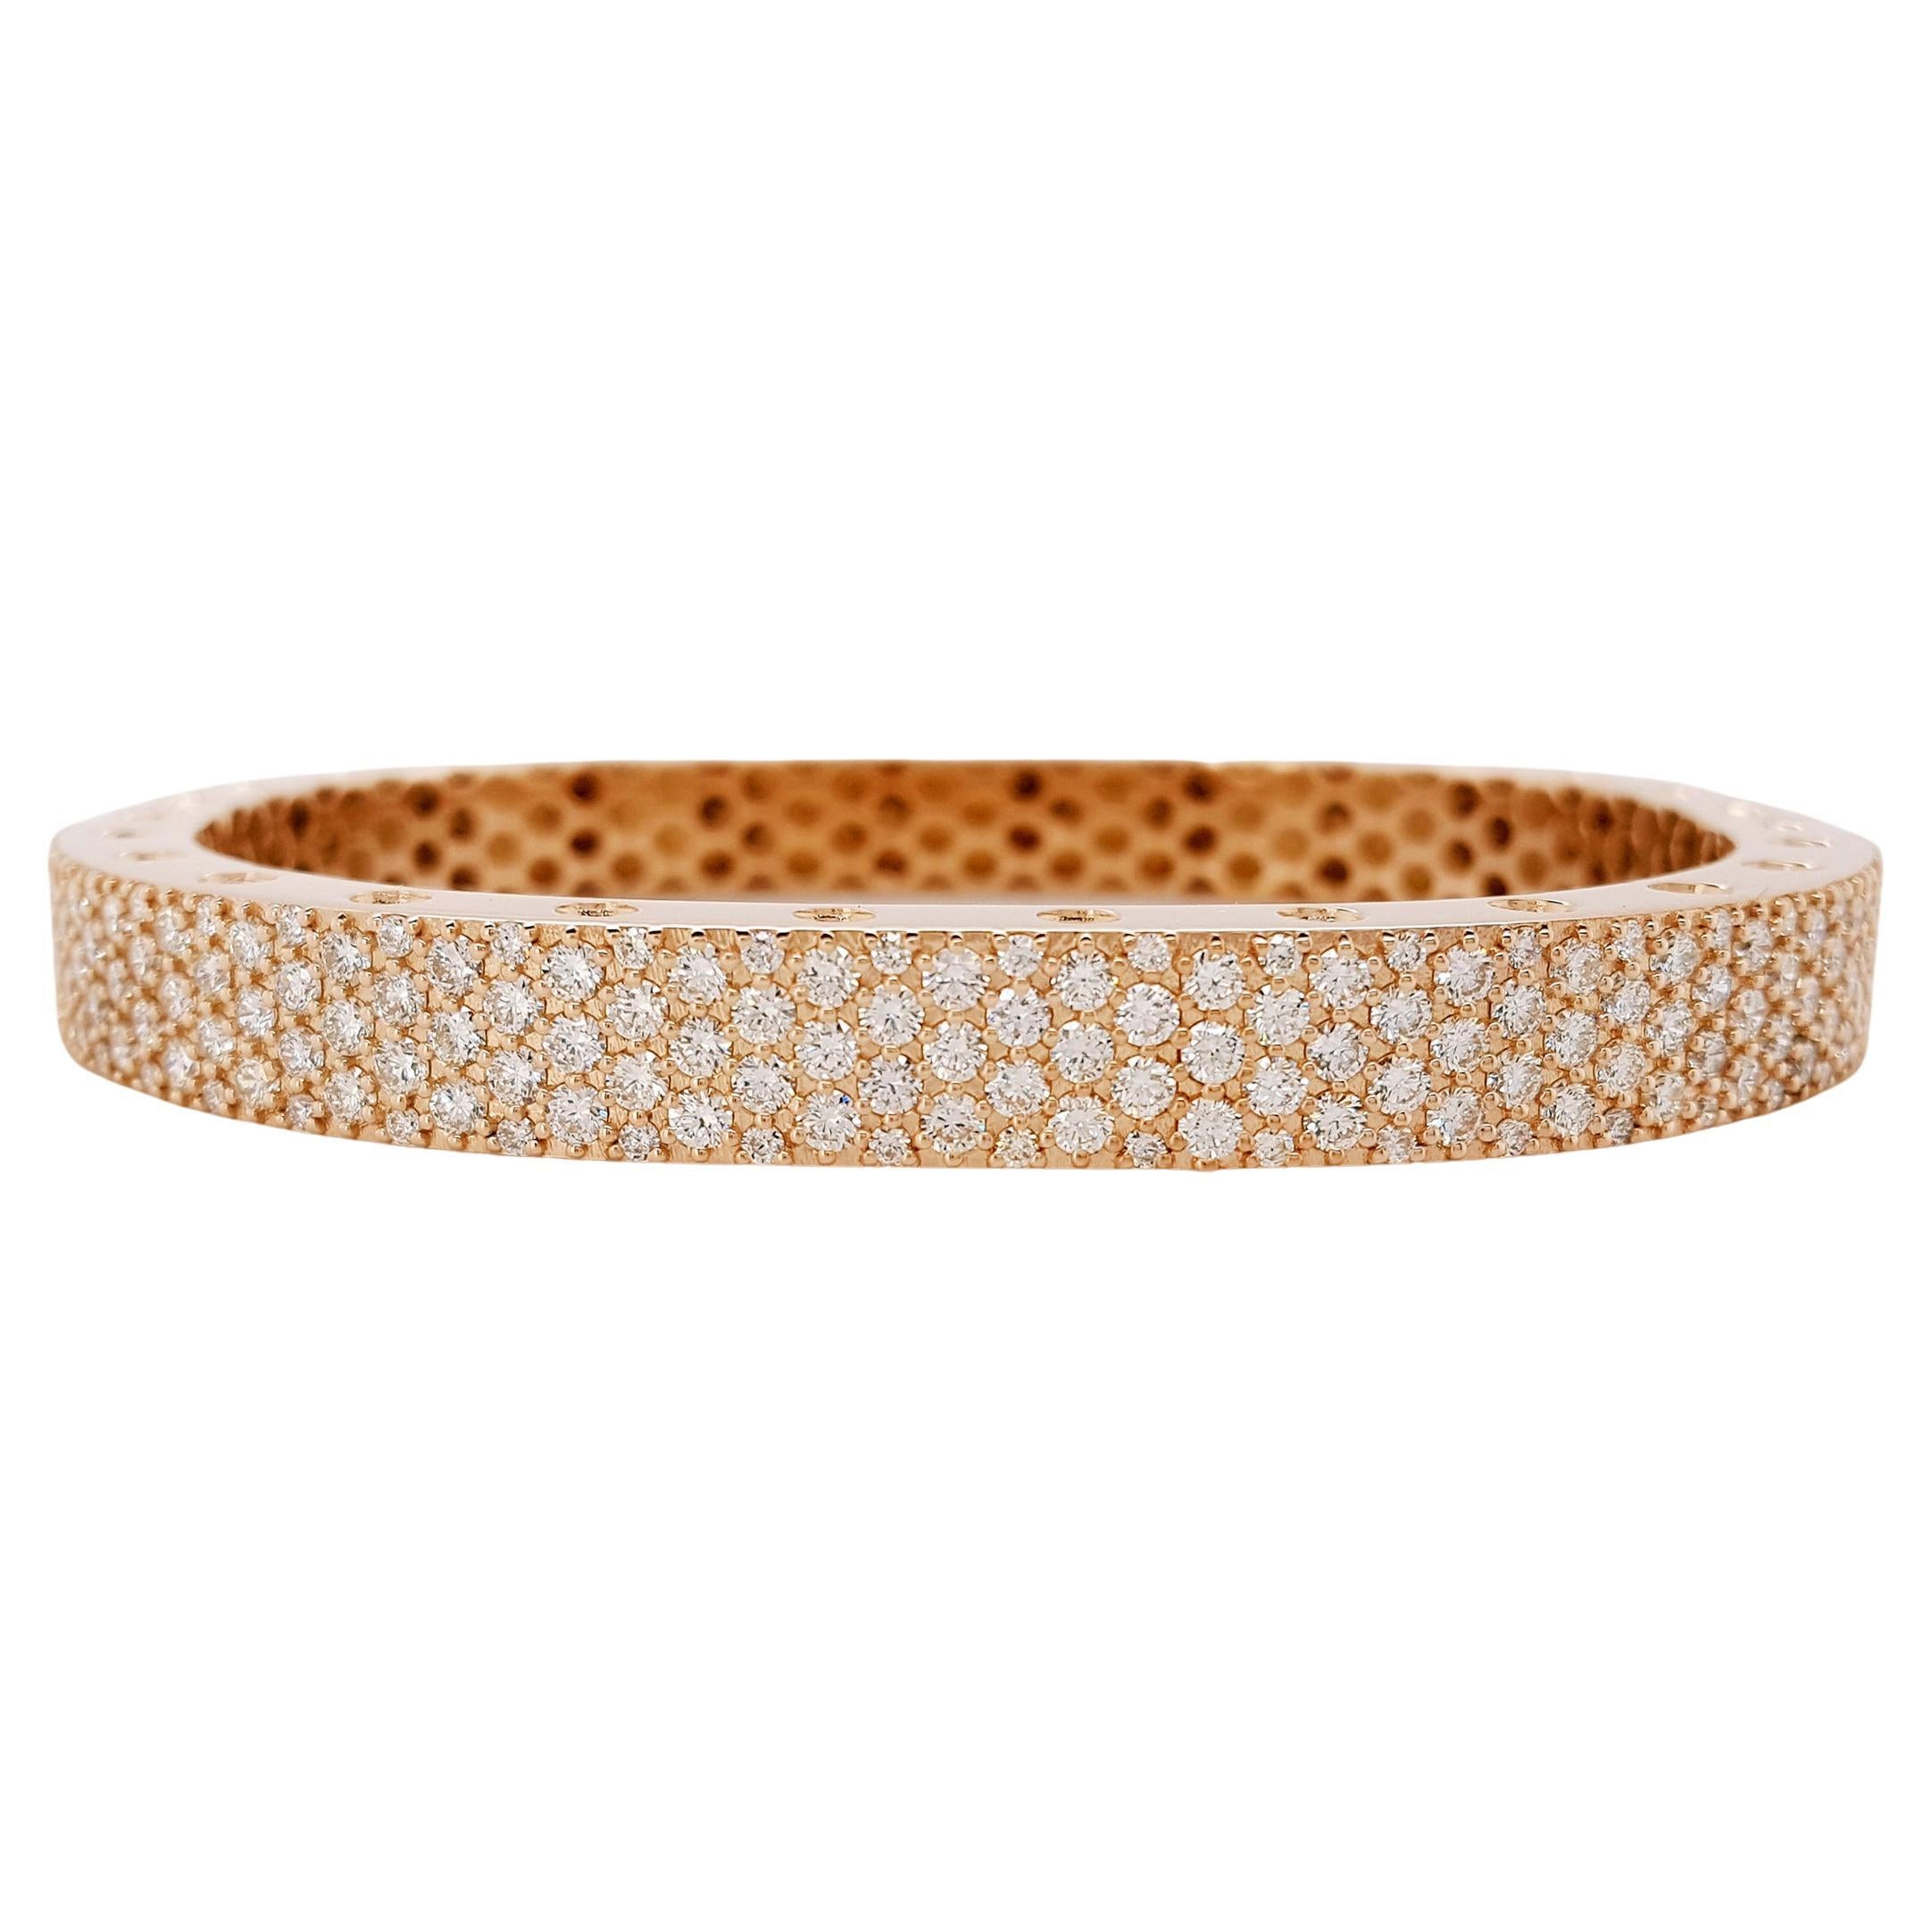 Ce superbe bracelet de style bangle en or rose 18 carats à deux sections est rehaussé de 171 diamants blancs ronds de taille brillant soigneusement assortis, d'un poids total d'environ 4,16 carats. Inspirée par l'art et la mode, Novel Collection